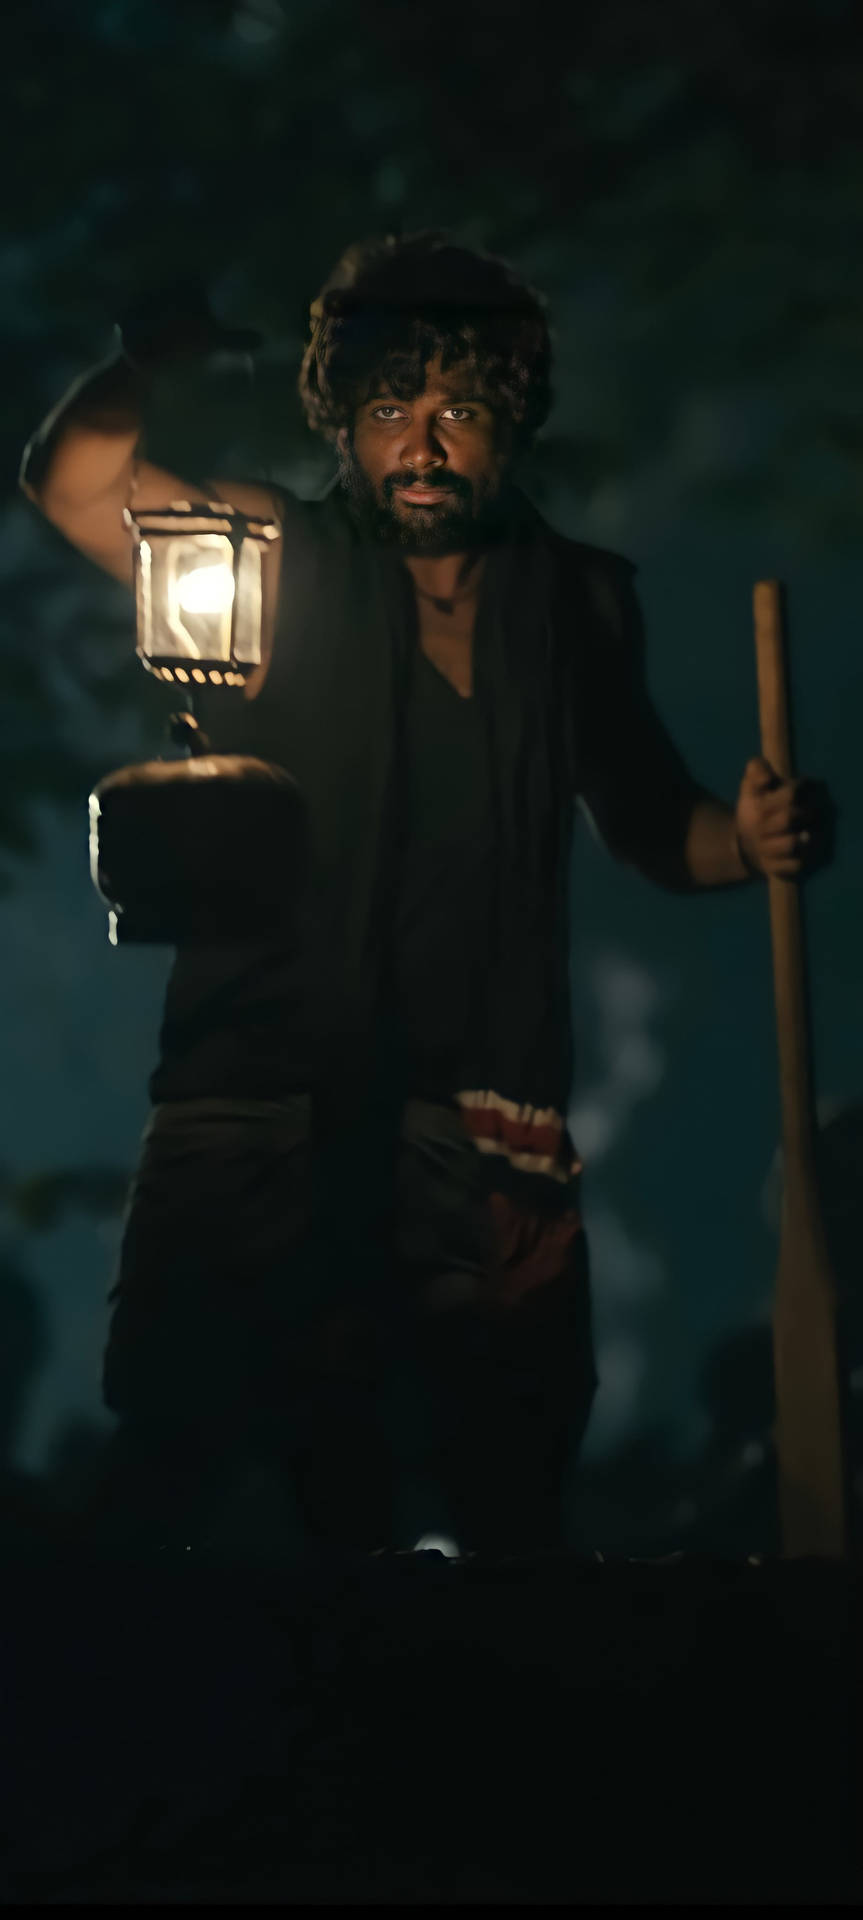 Intense Look of Allu Arjun as Pushpa Raj Under a Lamp Light Wallpaper